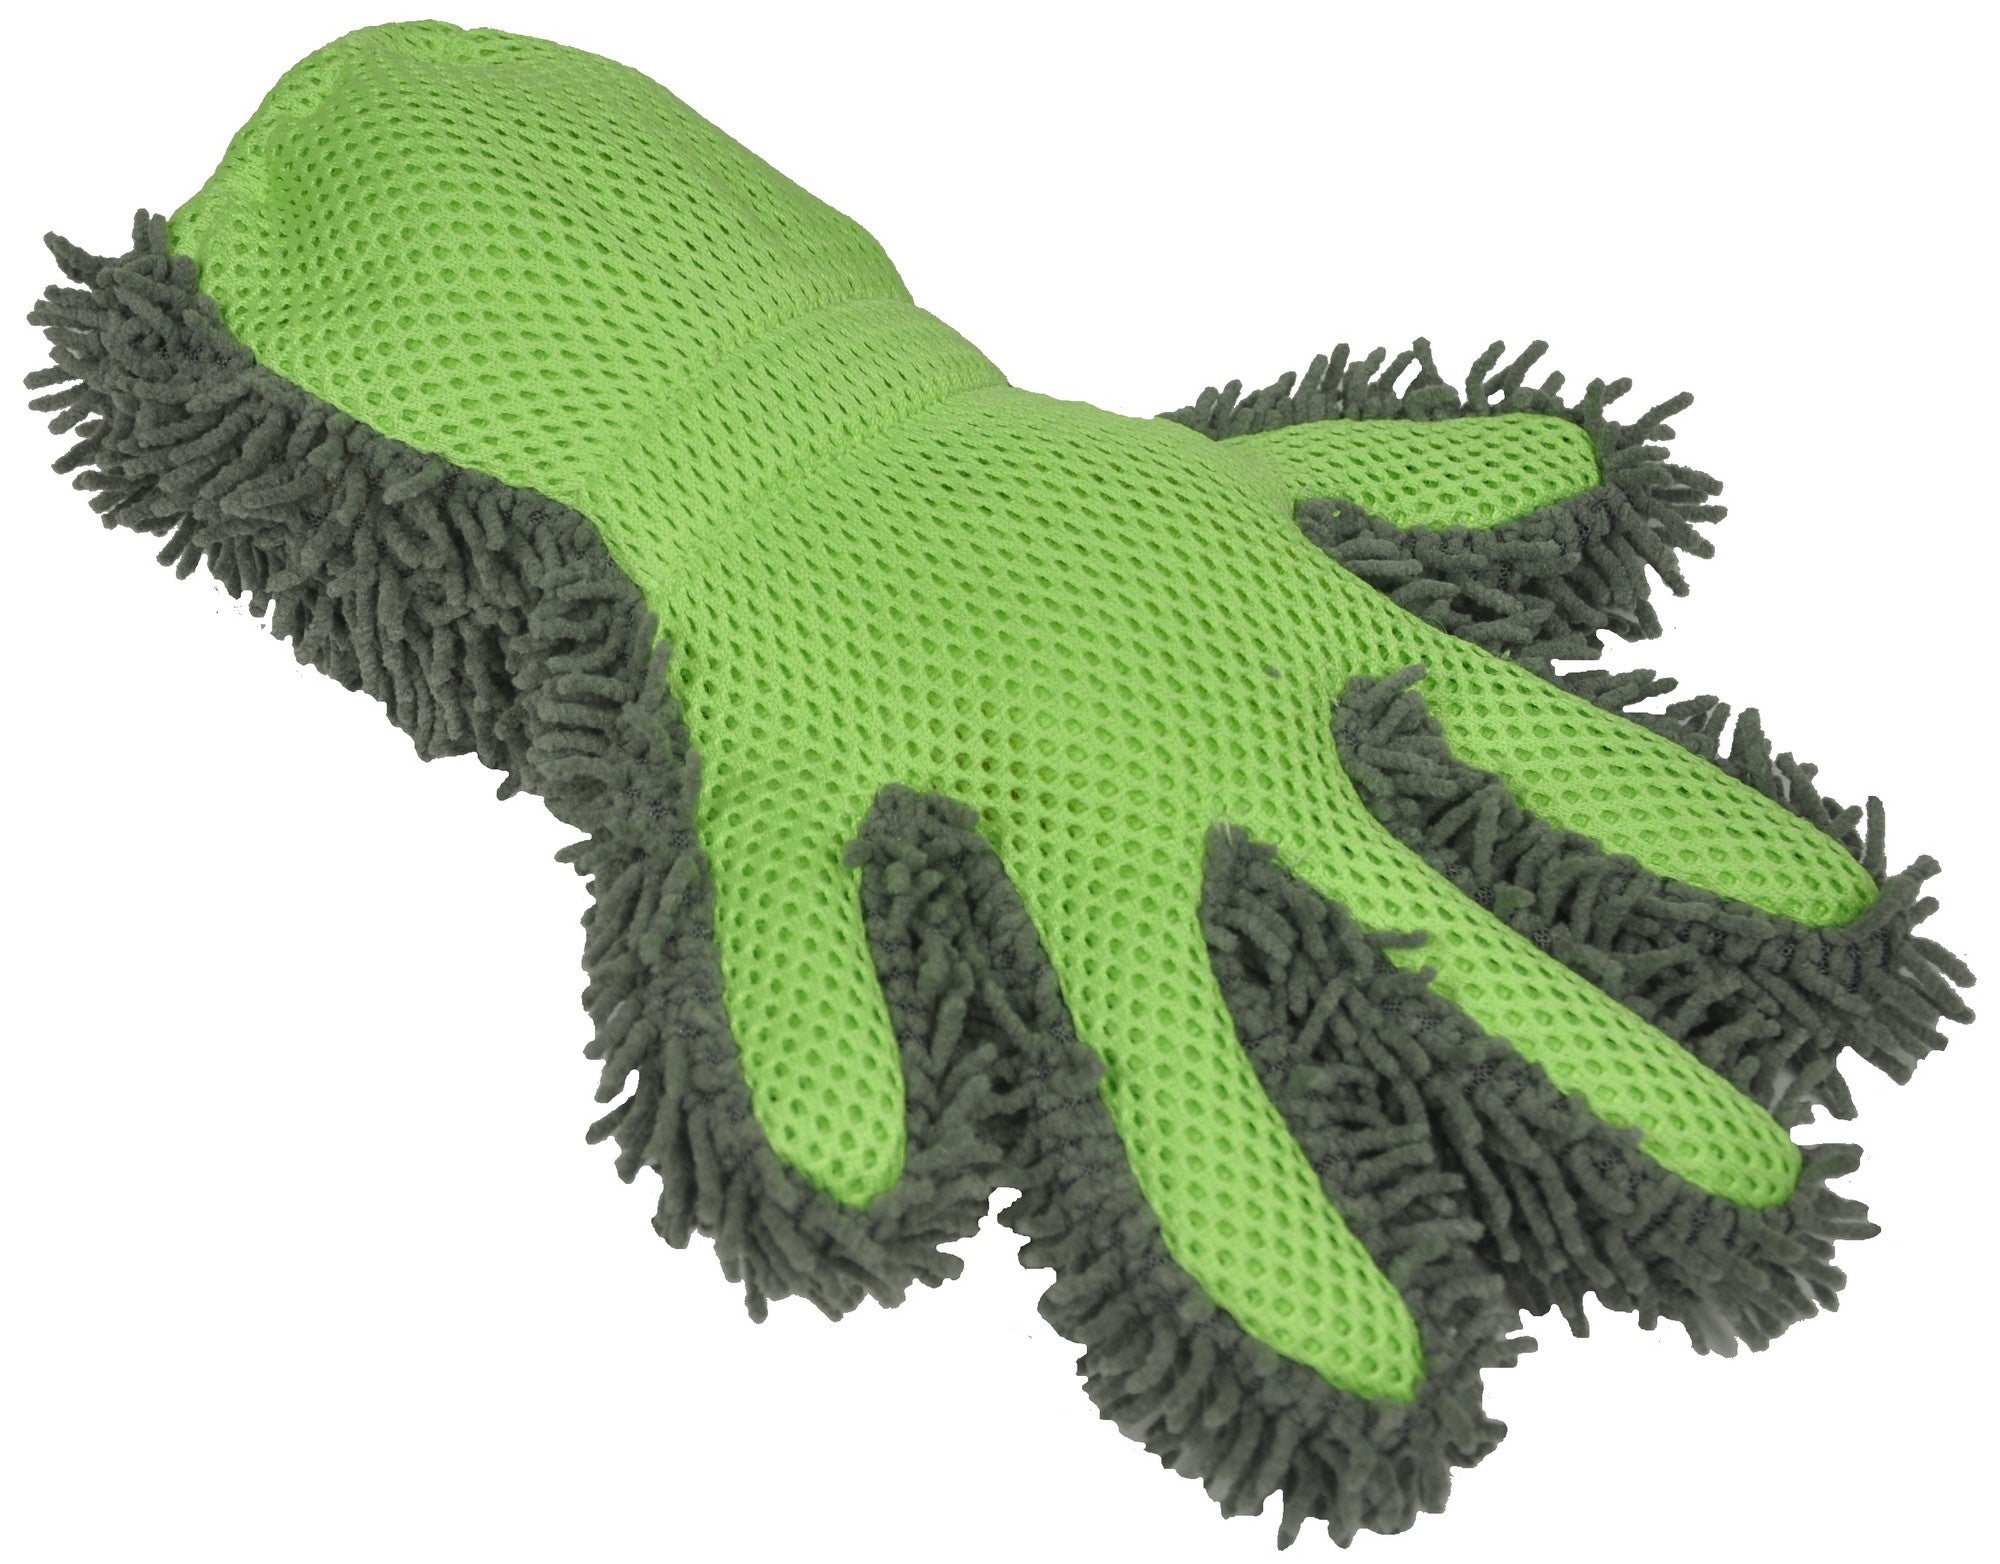 M-6326 Matin Microfiber Gloves Dust Fingerprint Proof (White) For